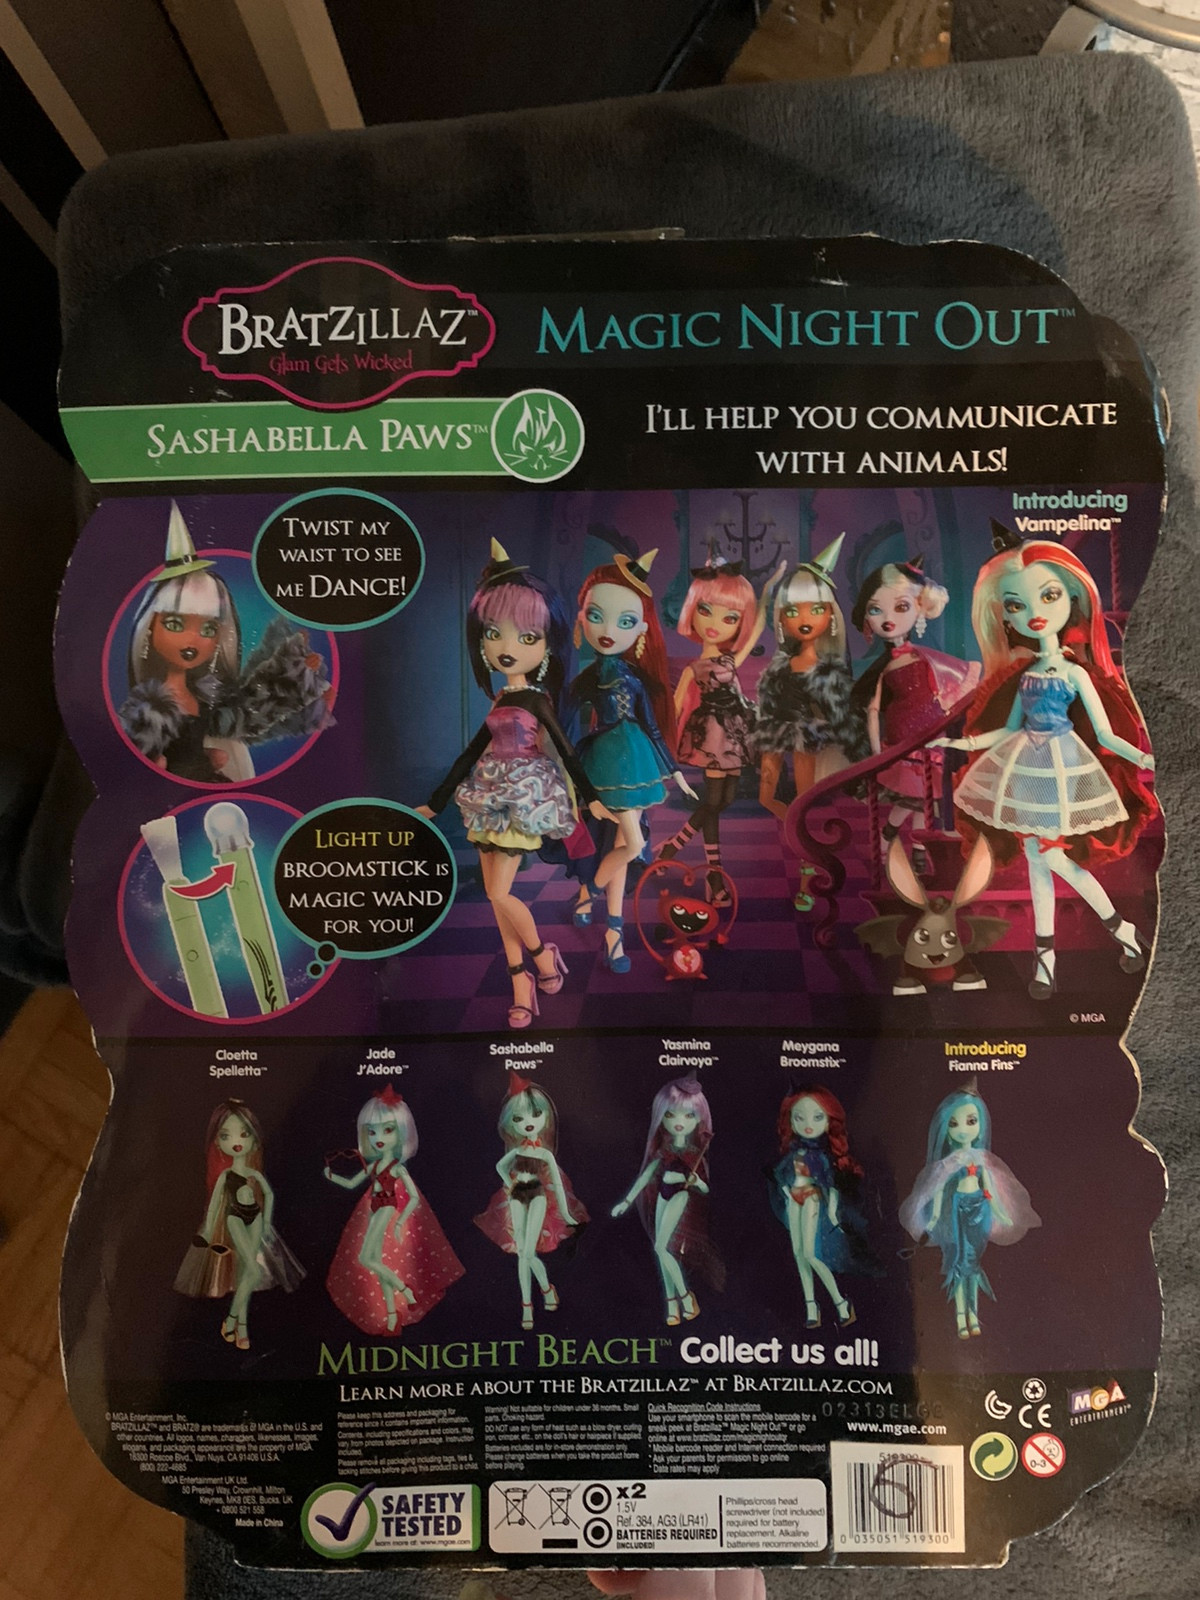 Bratzillaz Magic Night Out Doll - Cloetta Spelletta